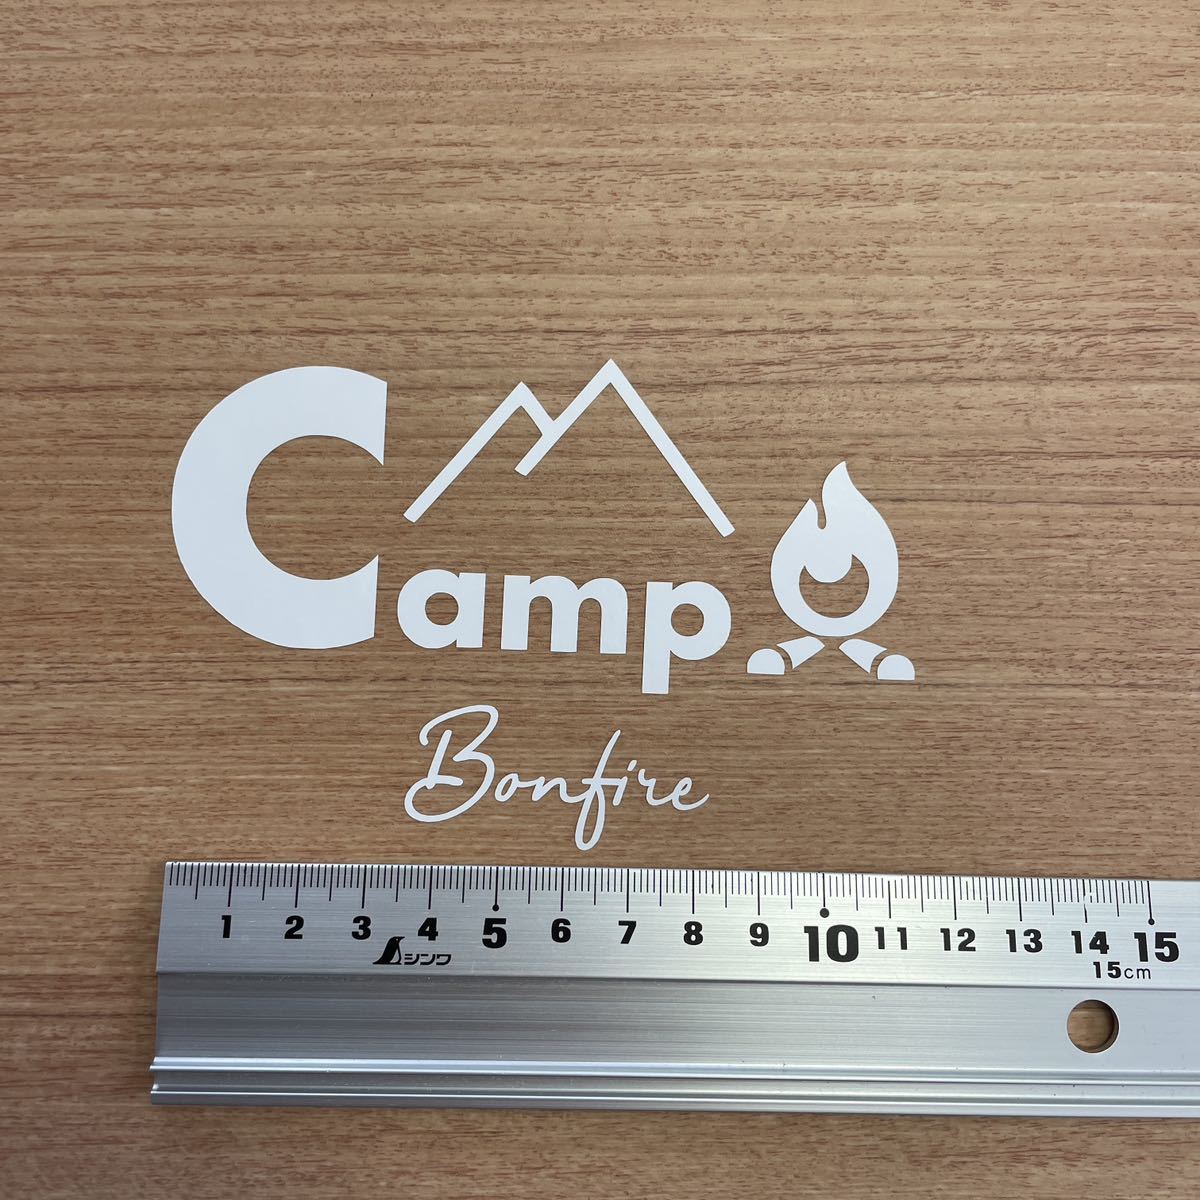 229. 【送料無料】 Camp Bonfire キャンプ カッティングステッカー 焚き火 CAMP アウトドア 【新品】 